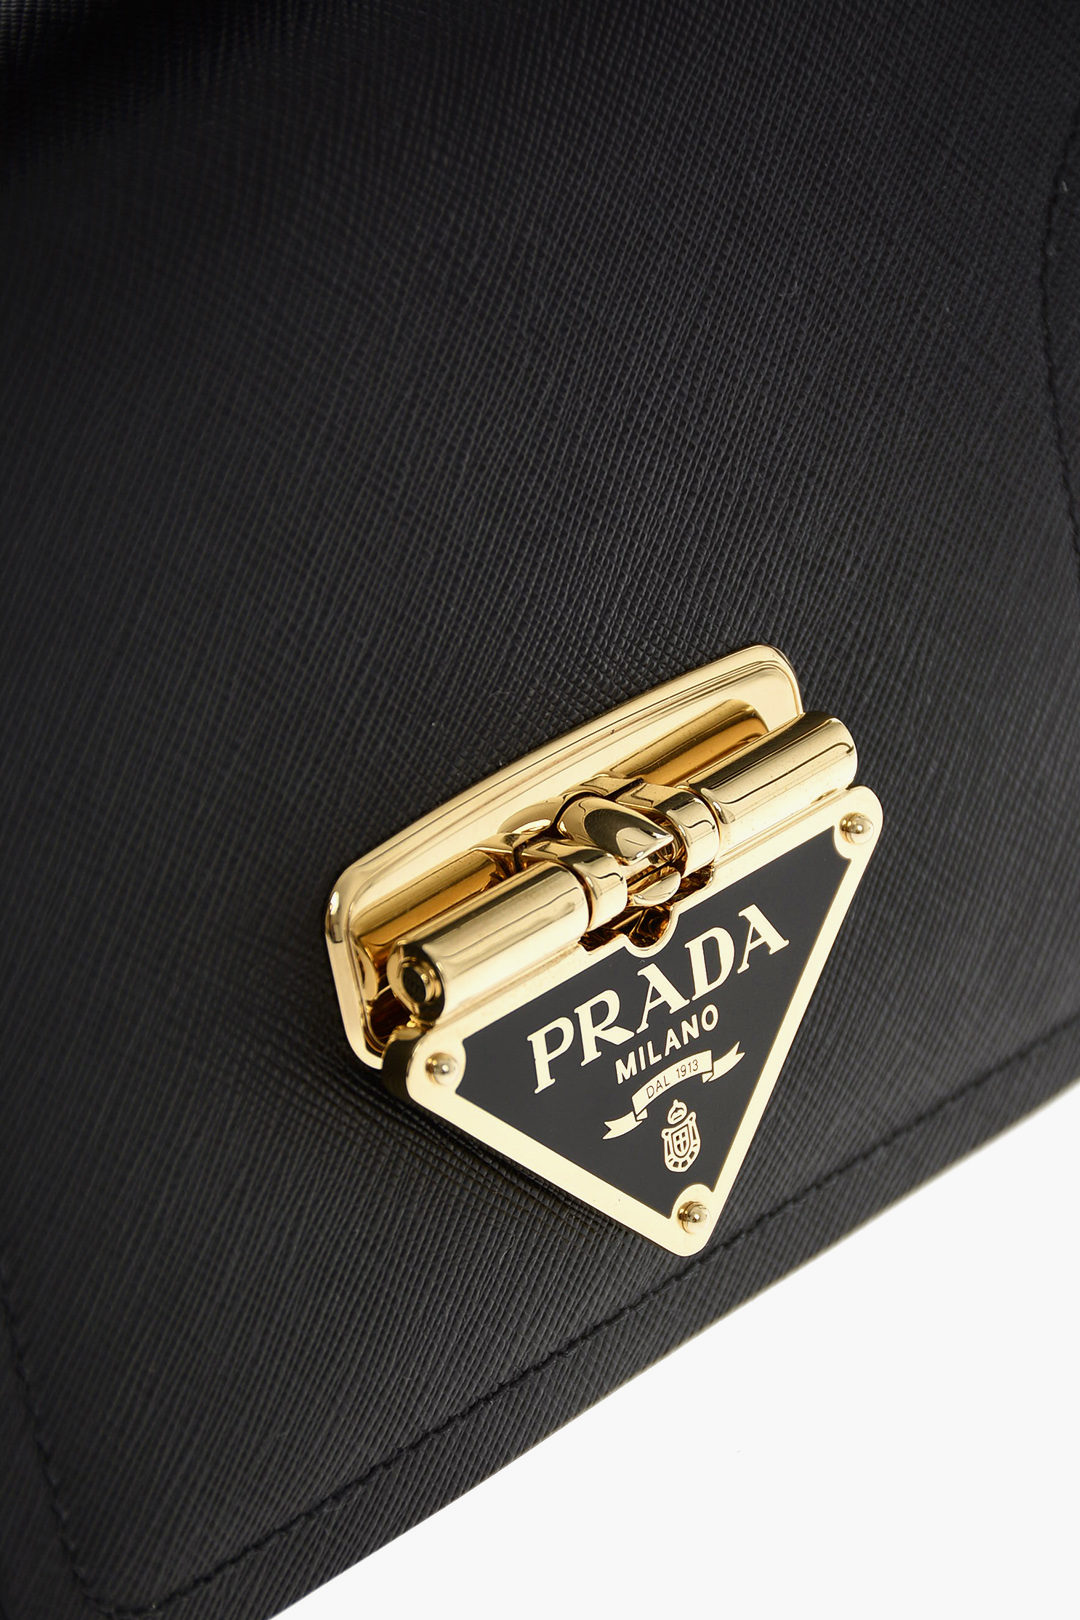 All Brand Shop - Prada Pattina Saffiano Shoulder Bag 🔸Size